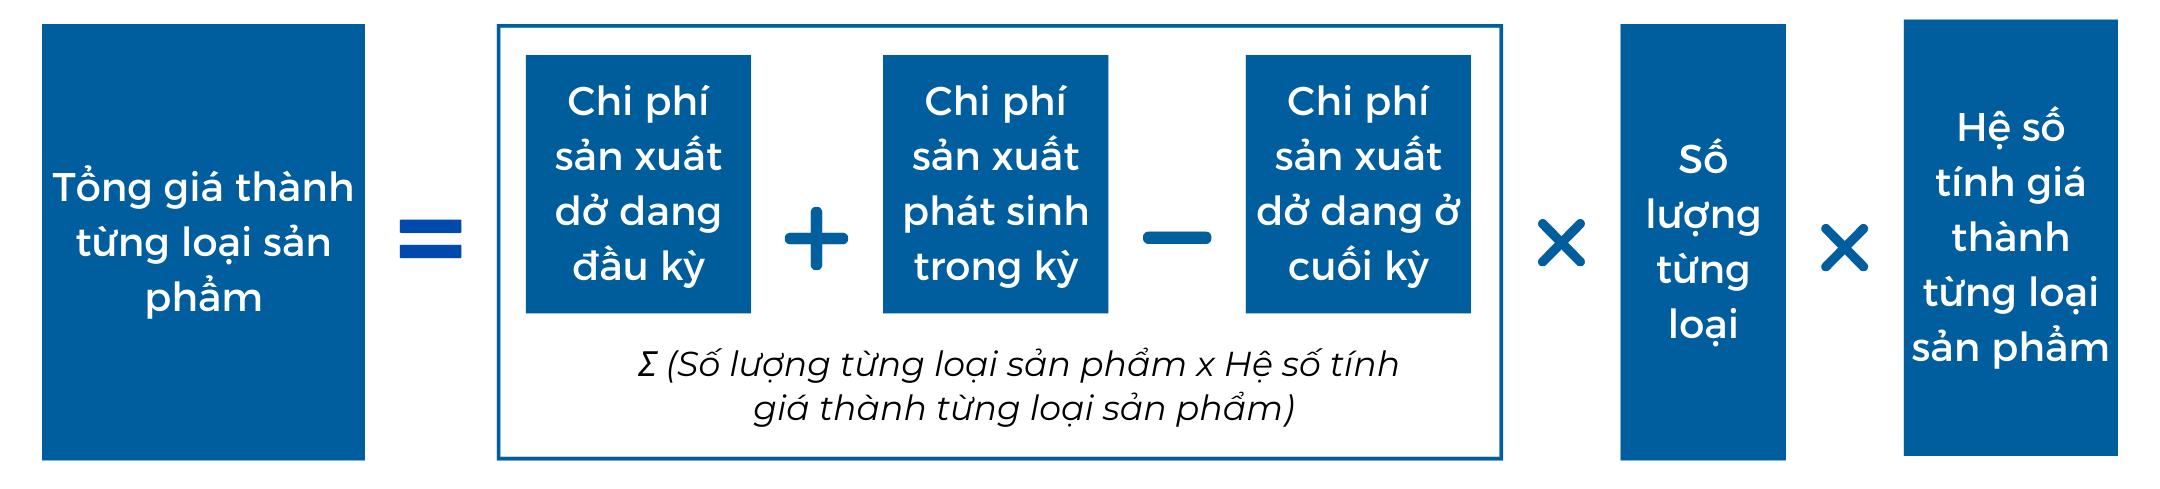 Phuong phap he so2 - Tính giá thành sản phẩm: Bài toán muôn thuở với các doanh nghiệp sản xuất